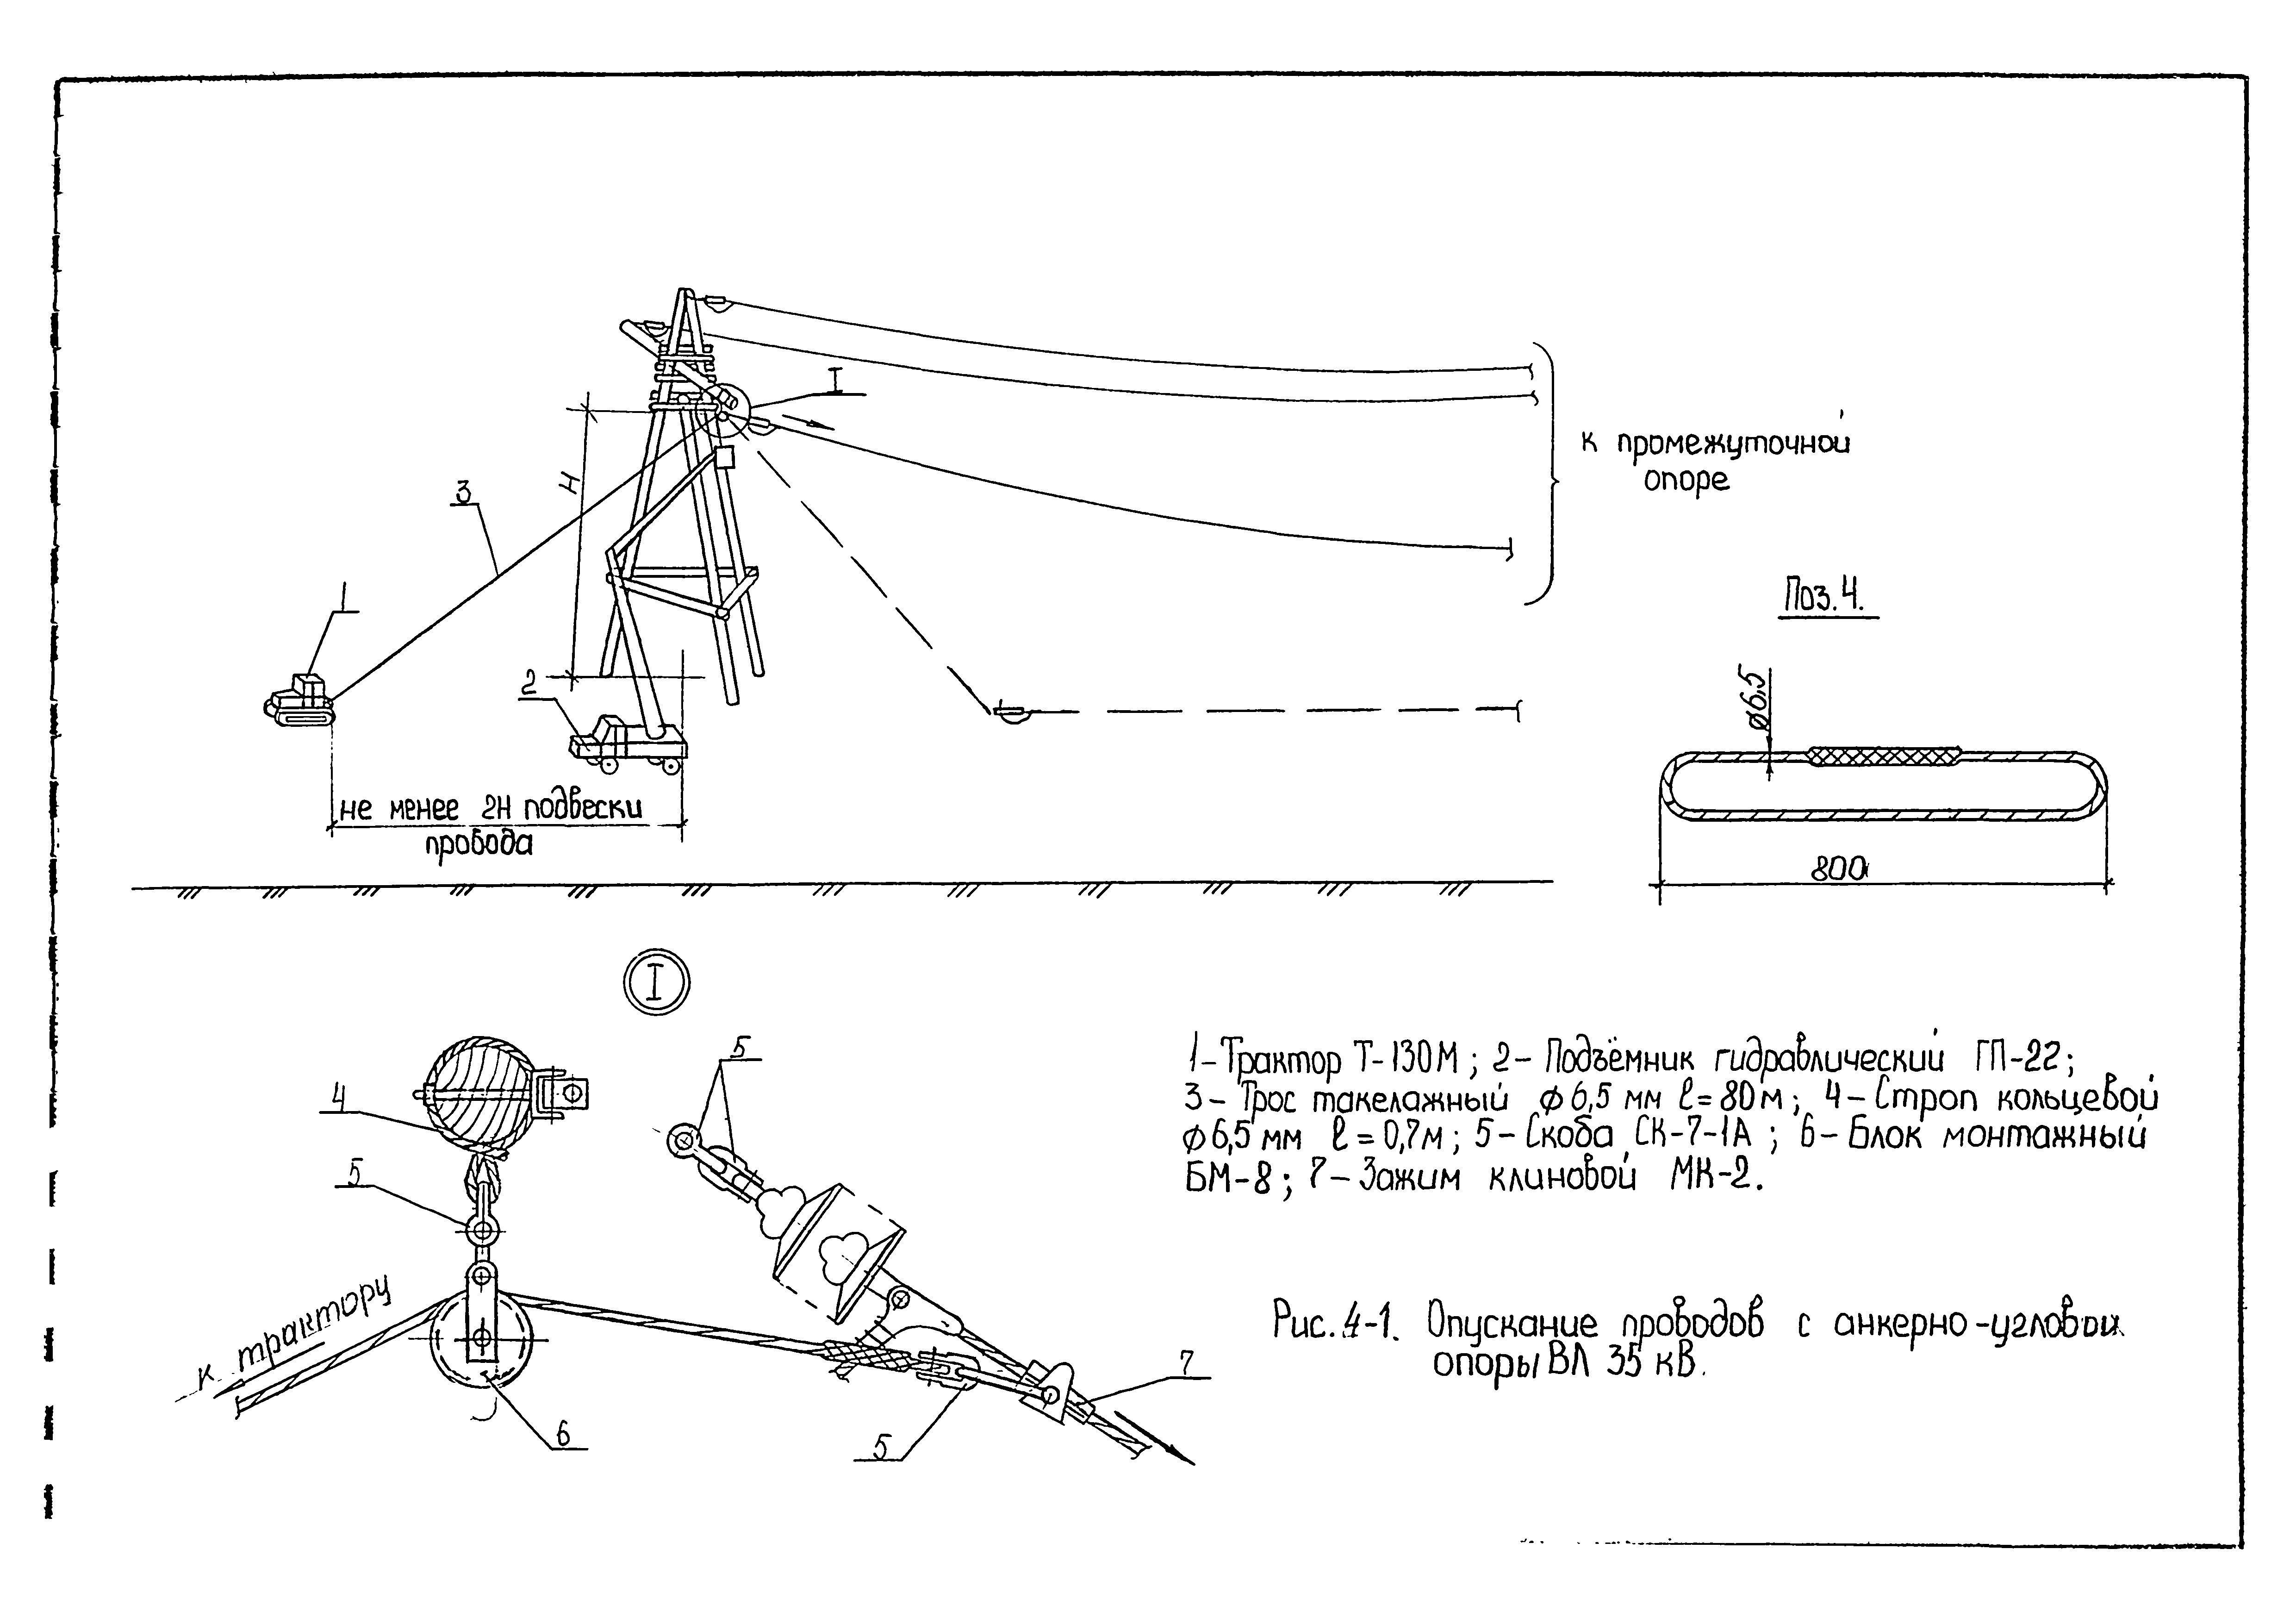 Технологическая карта К-9-4